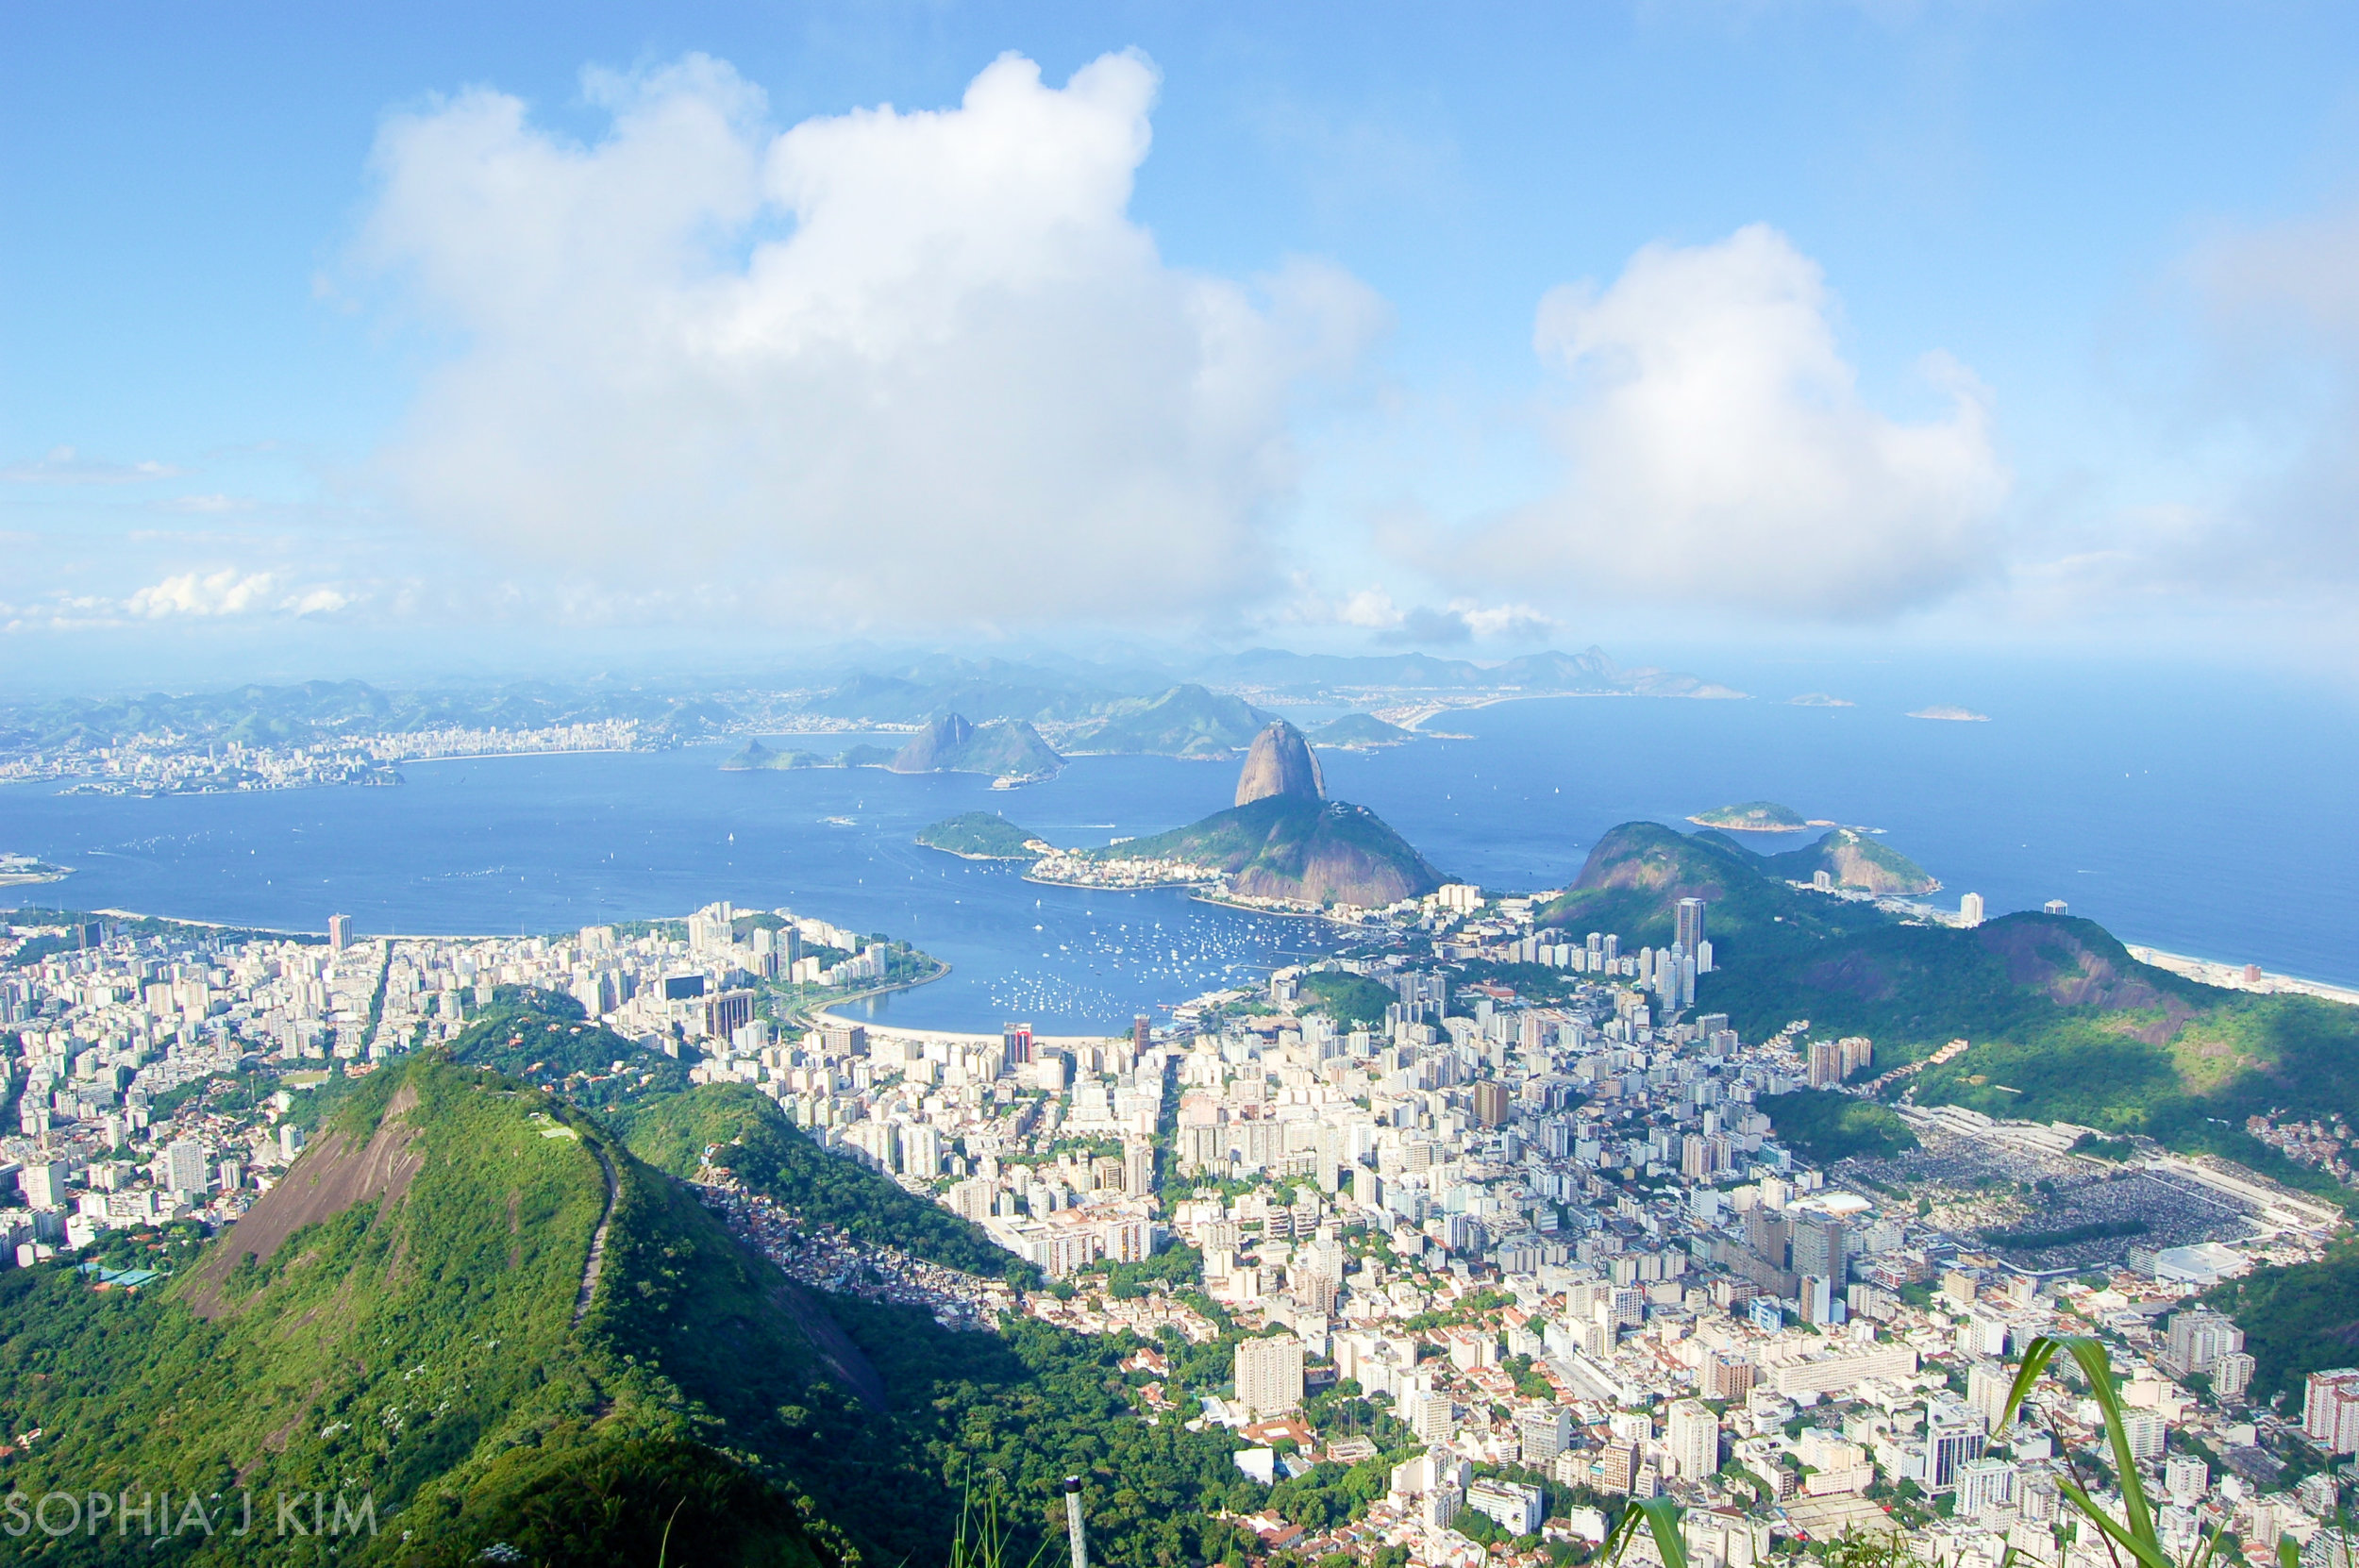 The Best View of Rio de Janeiro